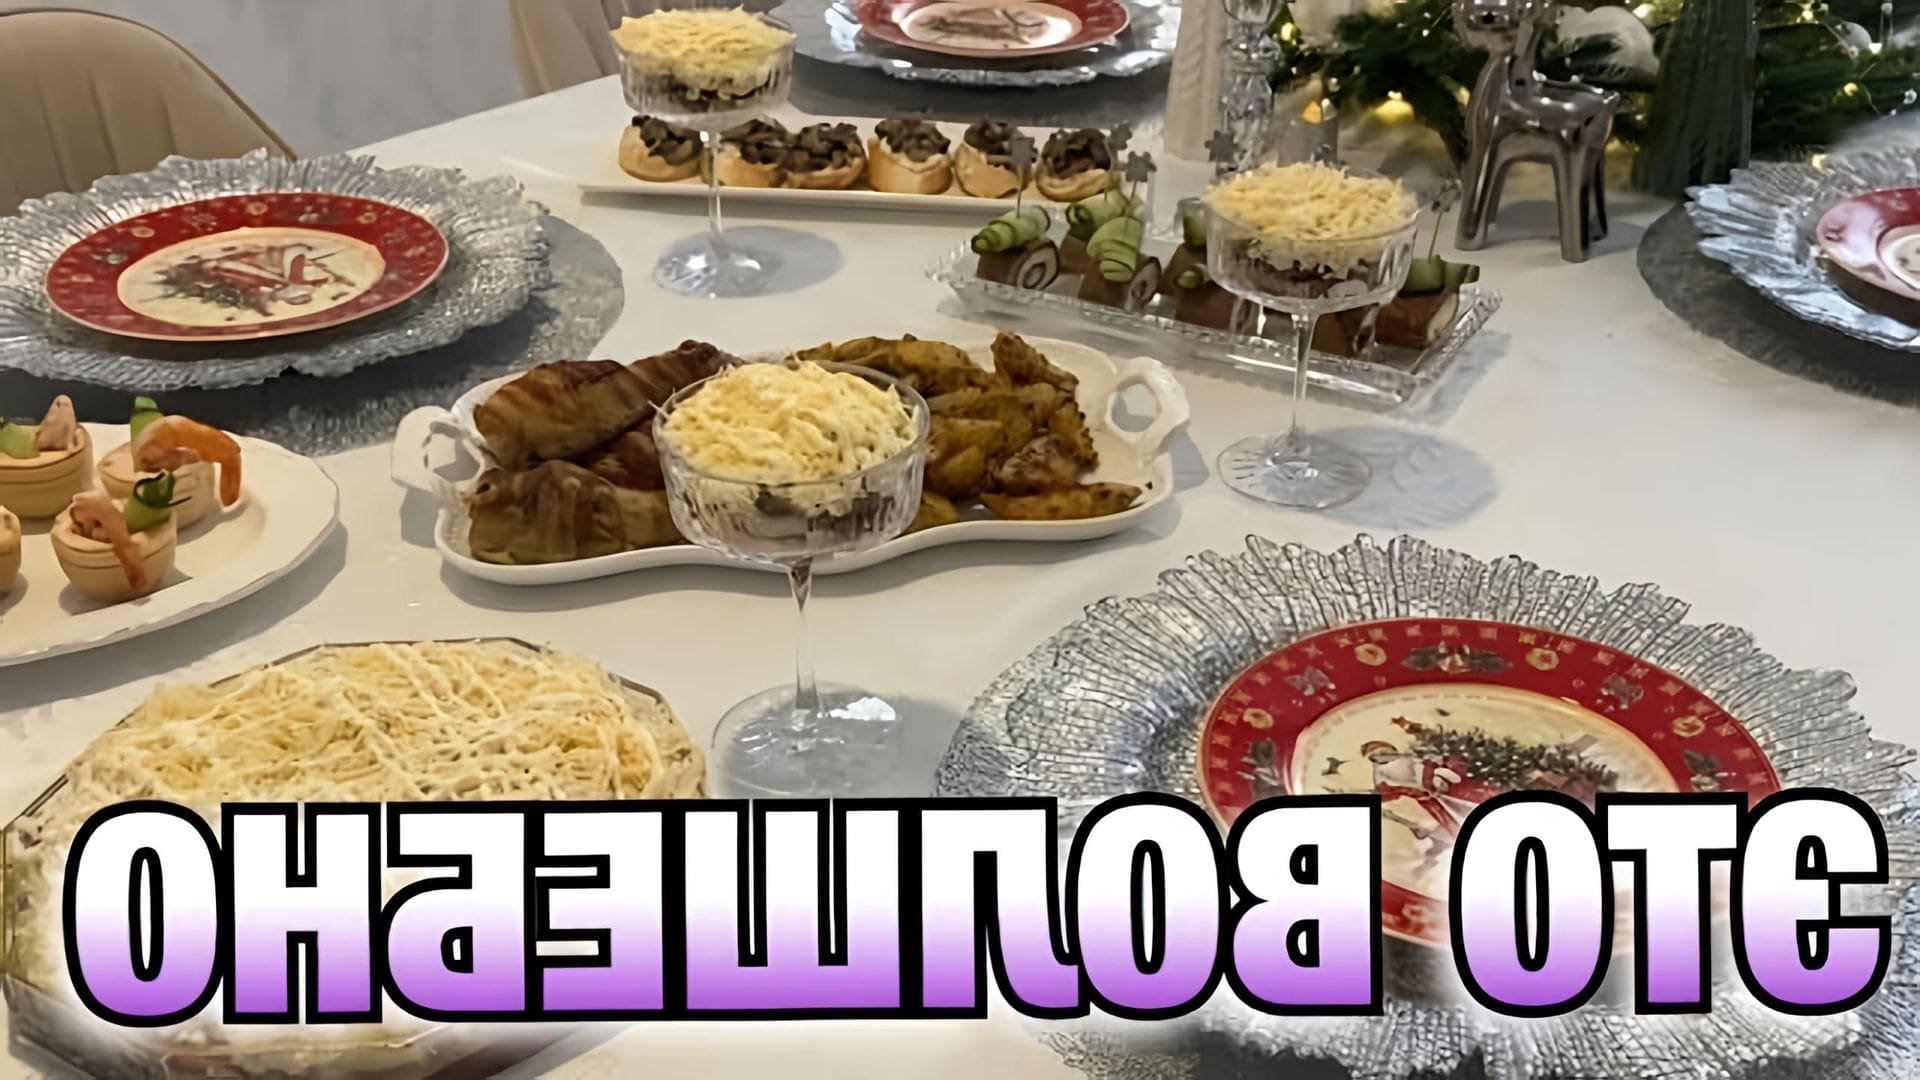 В этом видео девушка показывает, как приготовить праздничный стол на 1500 рублей из 6 блюд